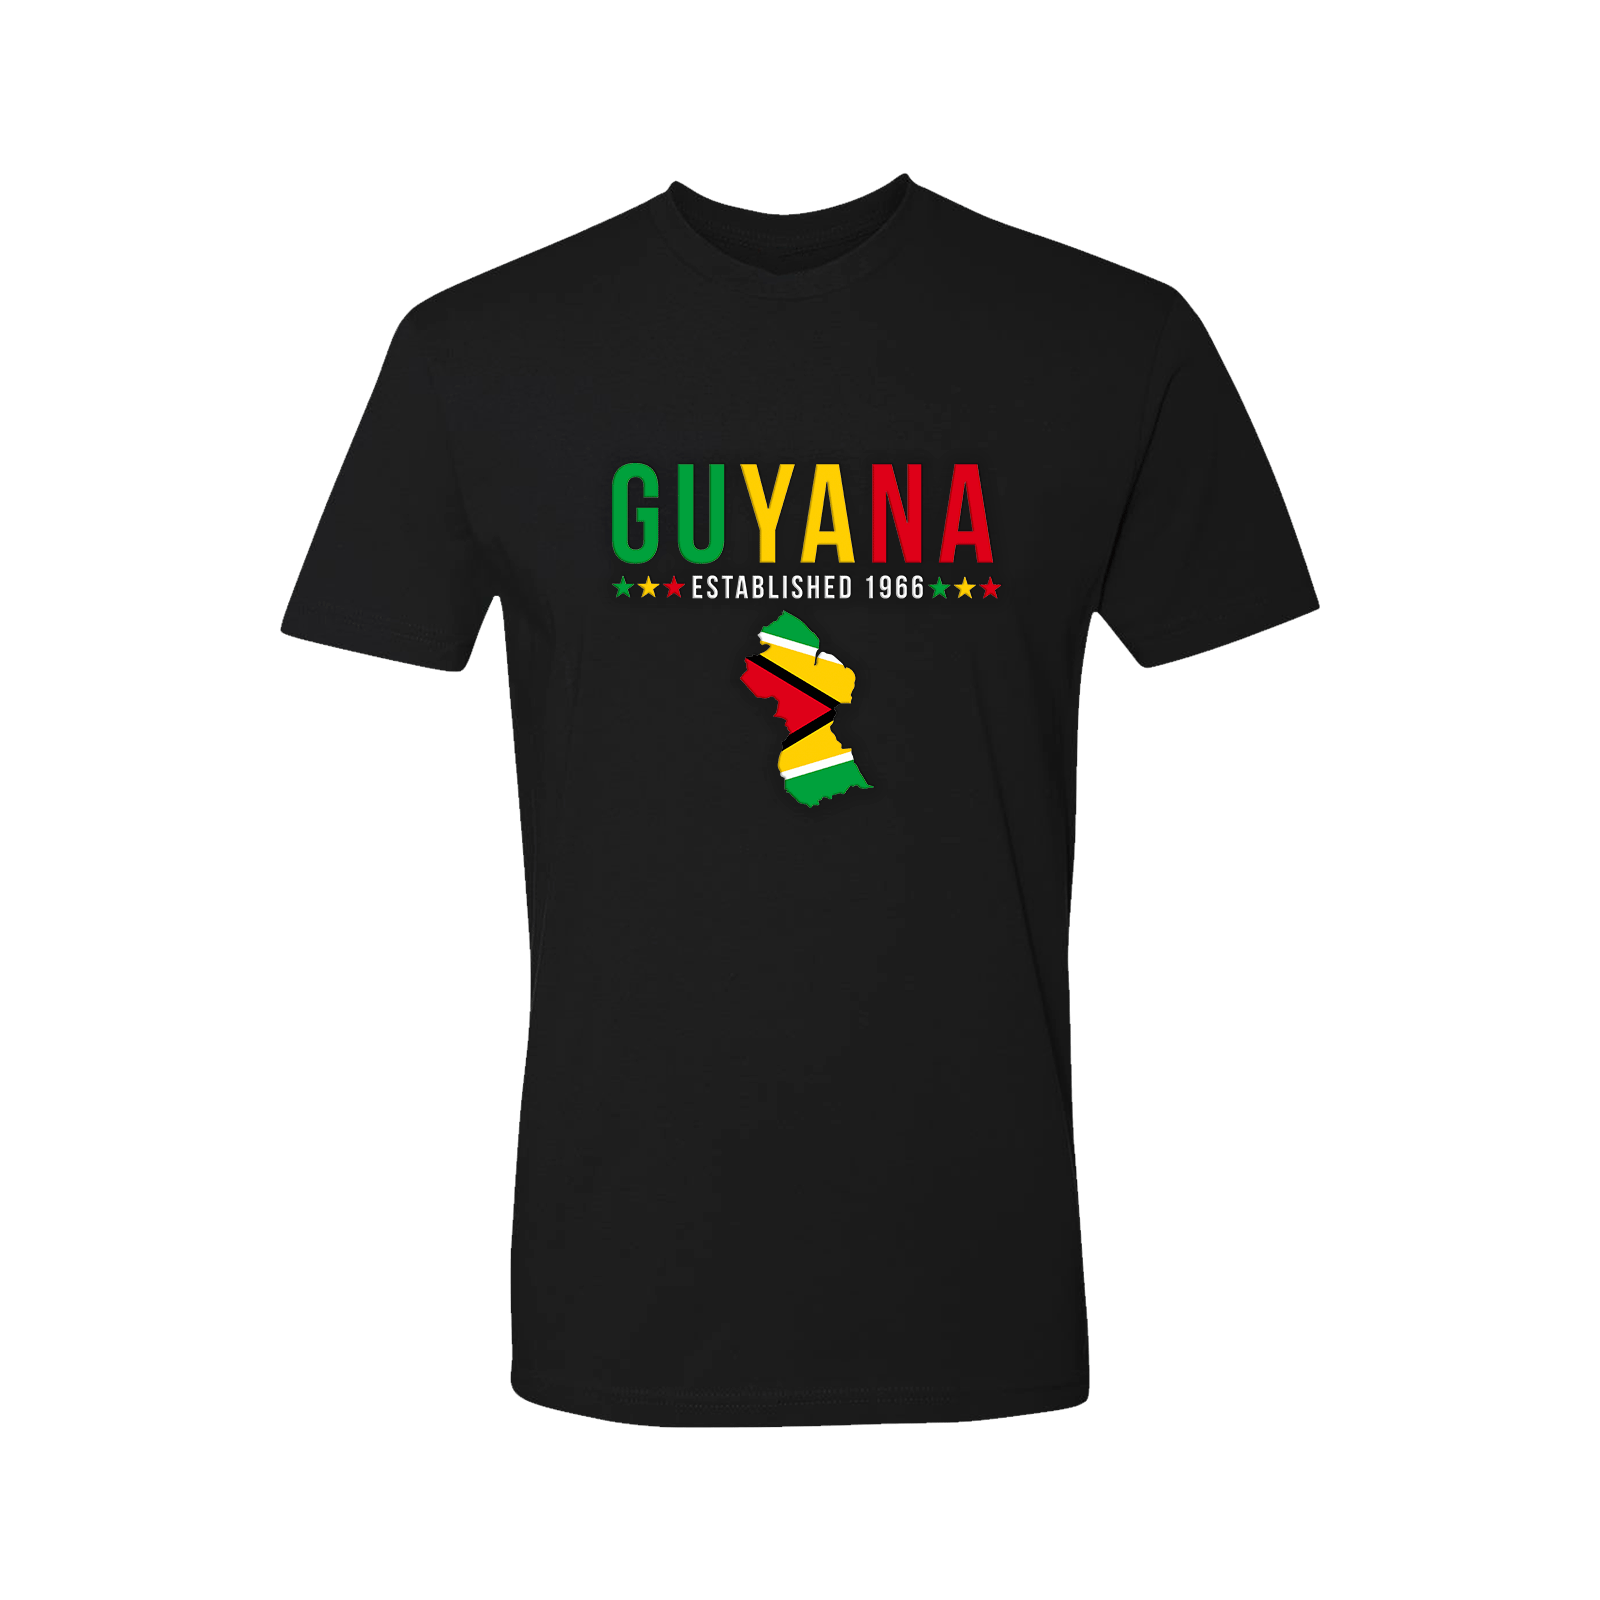 Guyana Short Sleeve Shirt - Kids